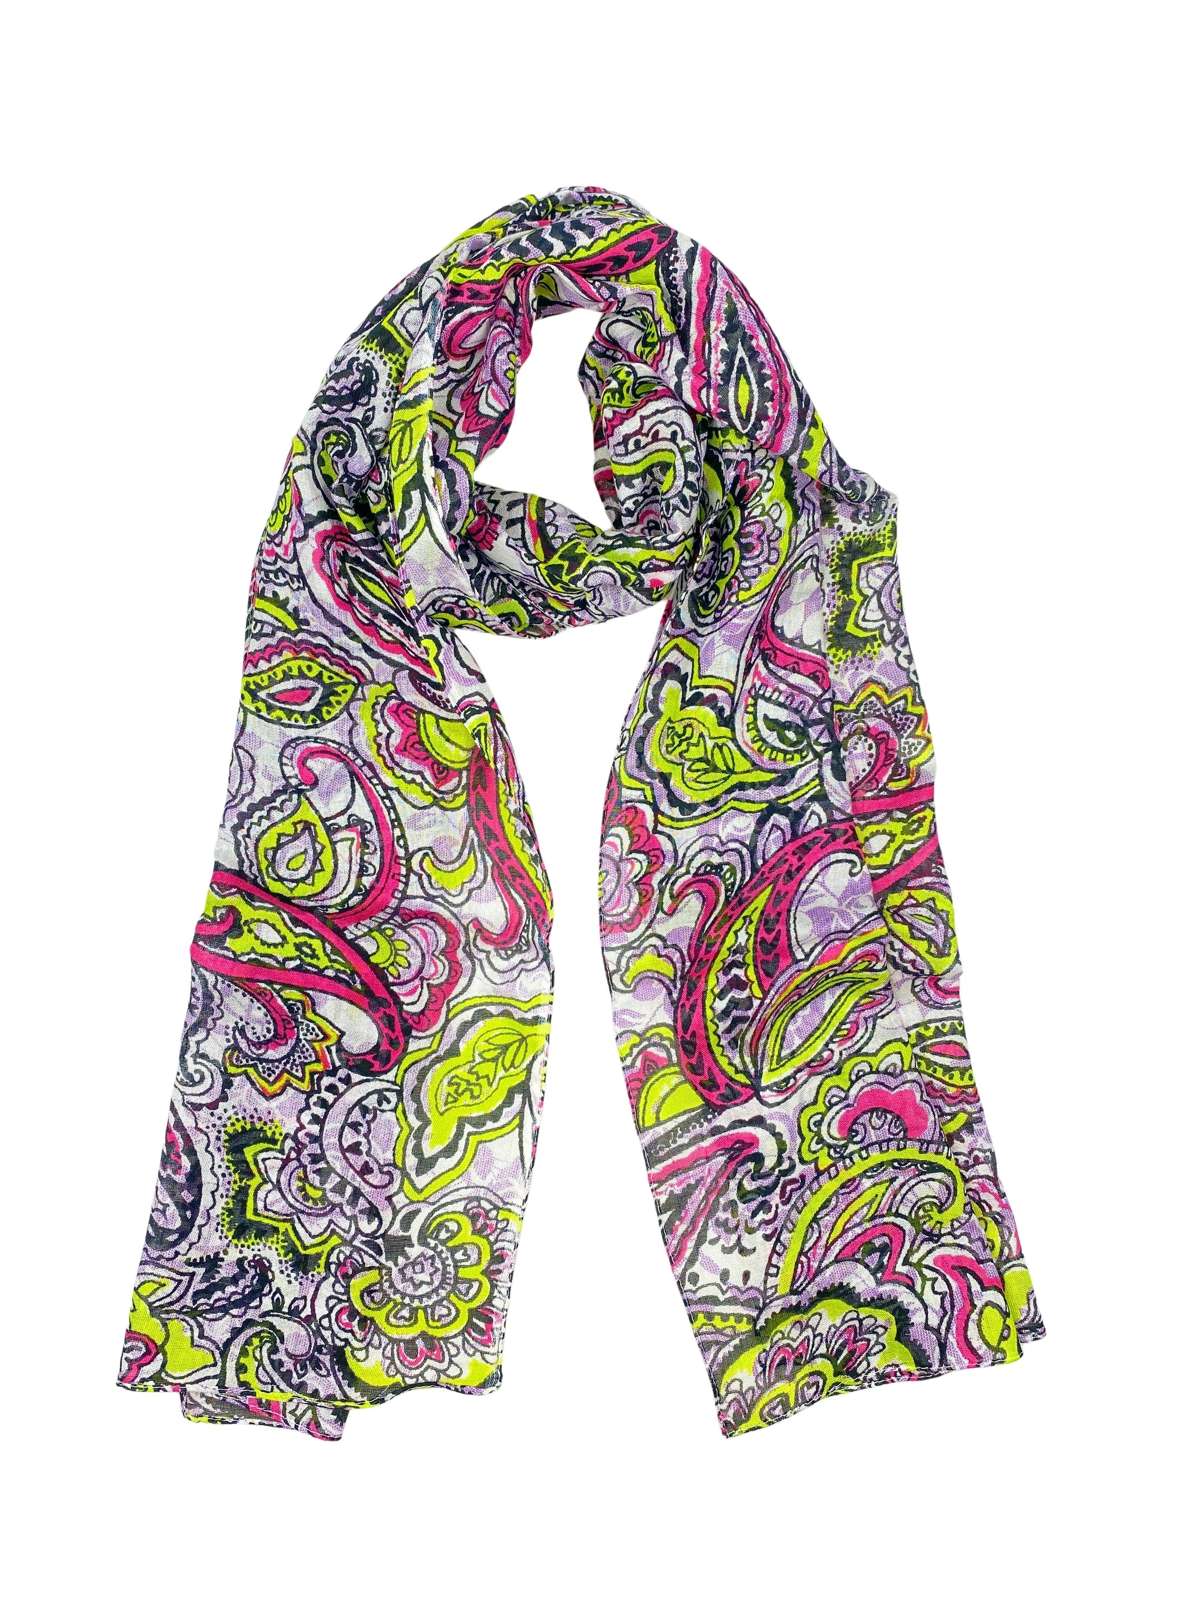 Модный шарф (1 штука) с узором пейсли ярких цветов.